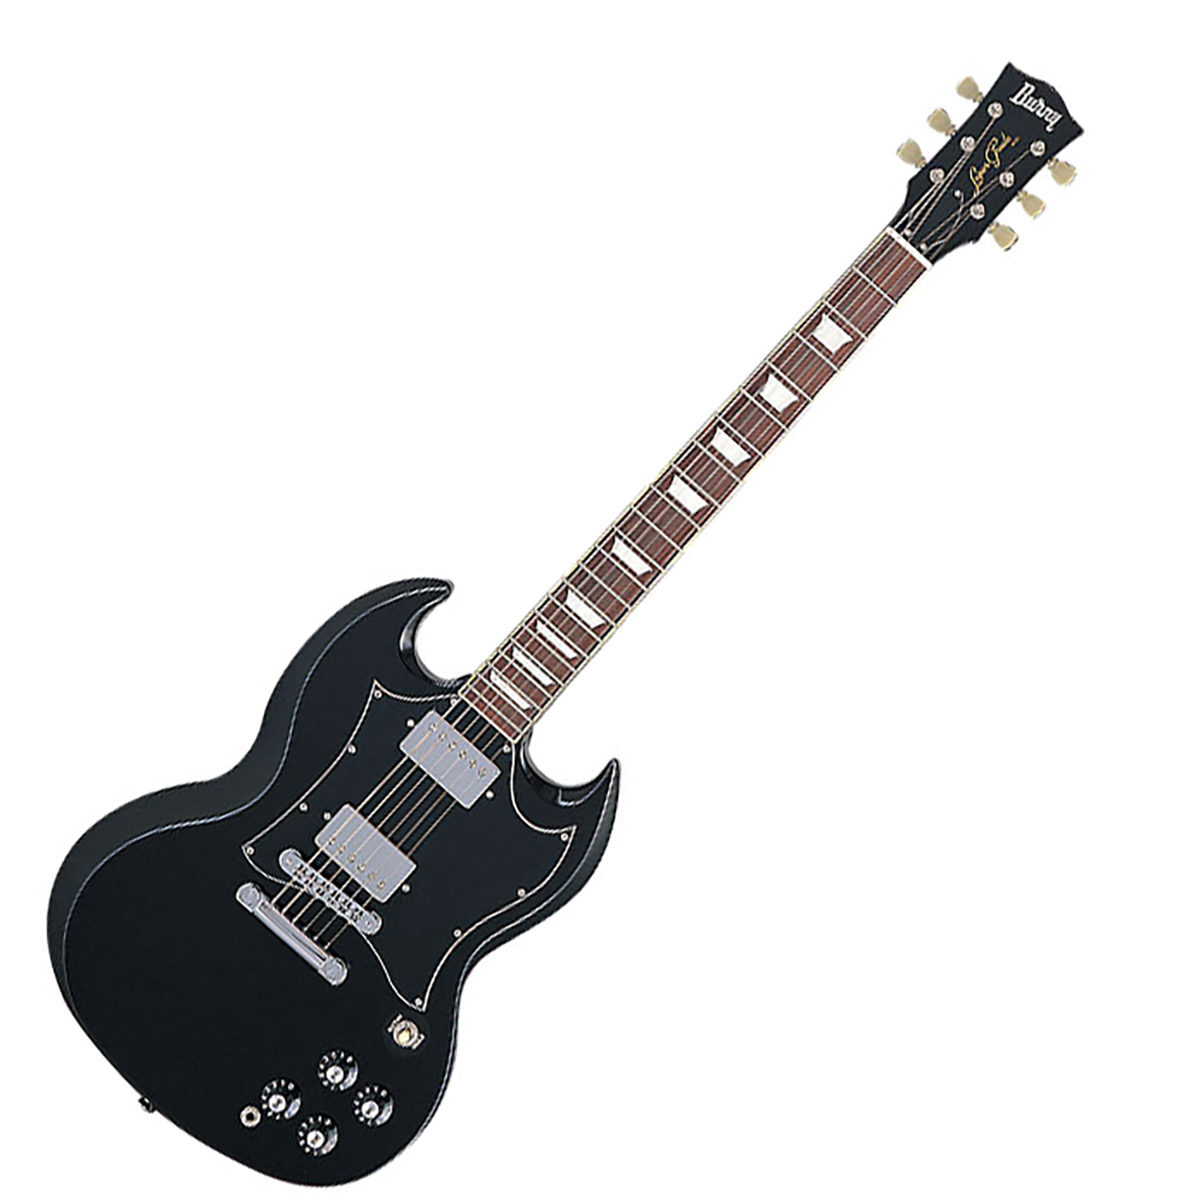 Burny バーニー RSG-60 69 BLK ブラック エレキギター SGタイプ